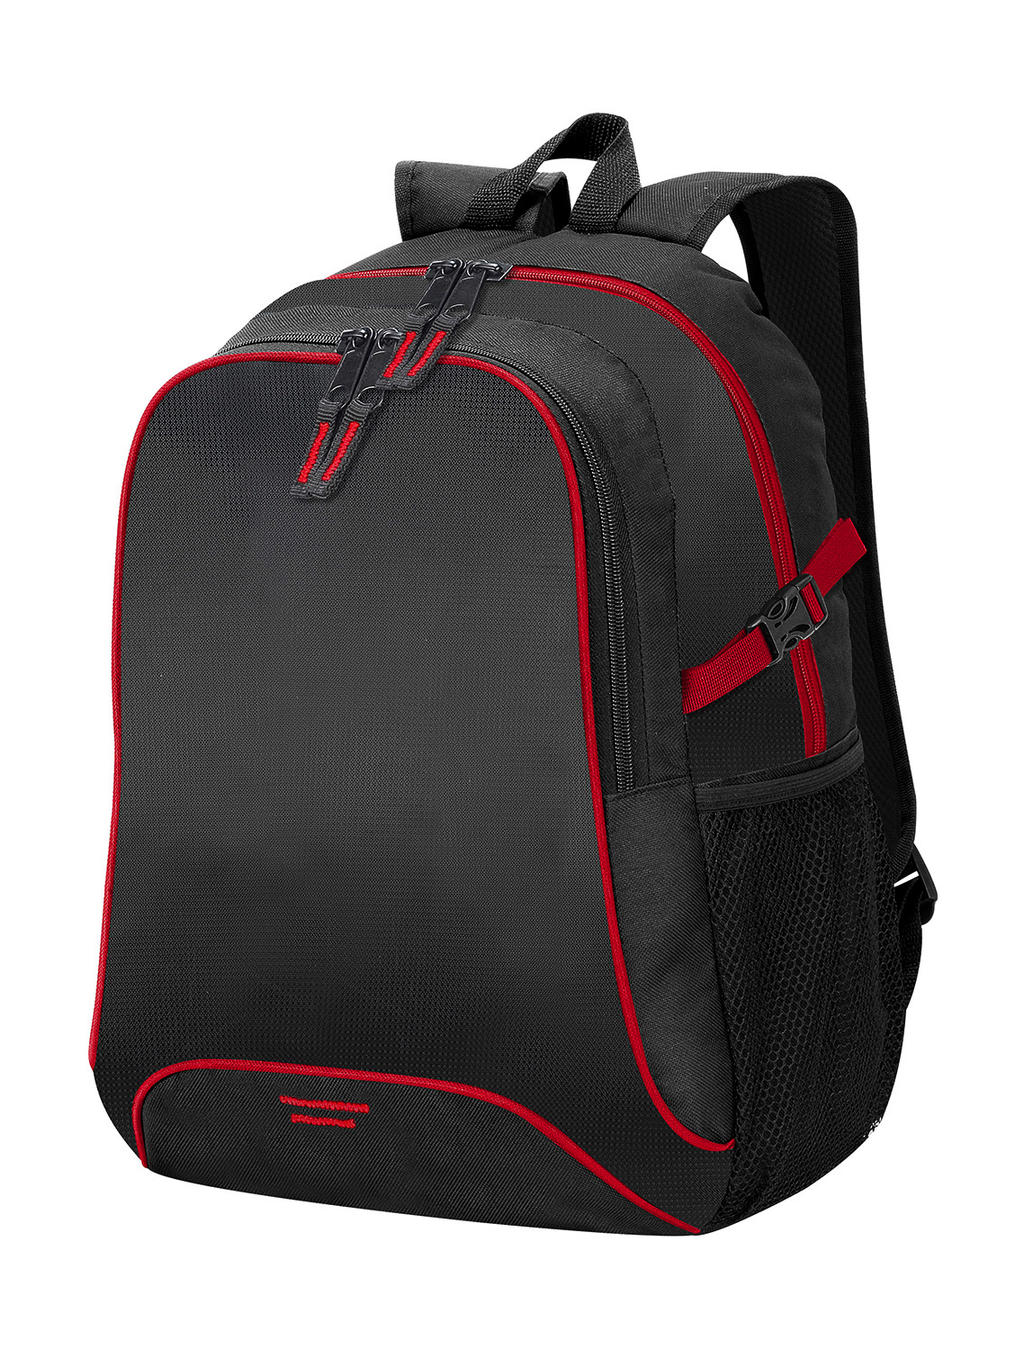  Osaka Basic Backpack in Farbe Black/Red